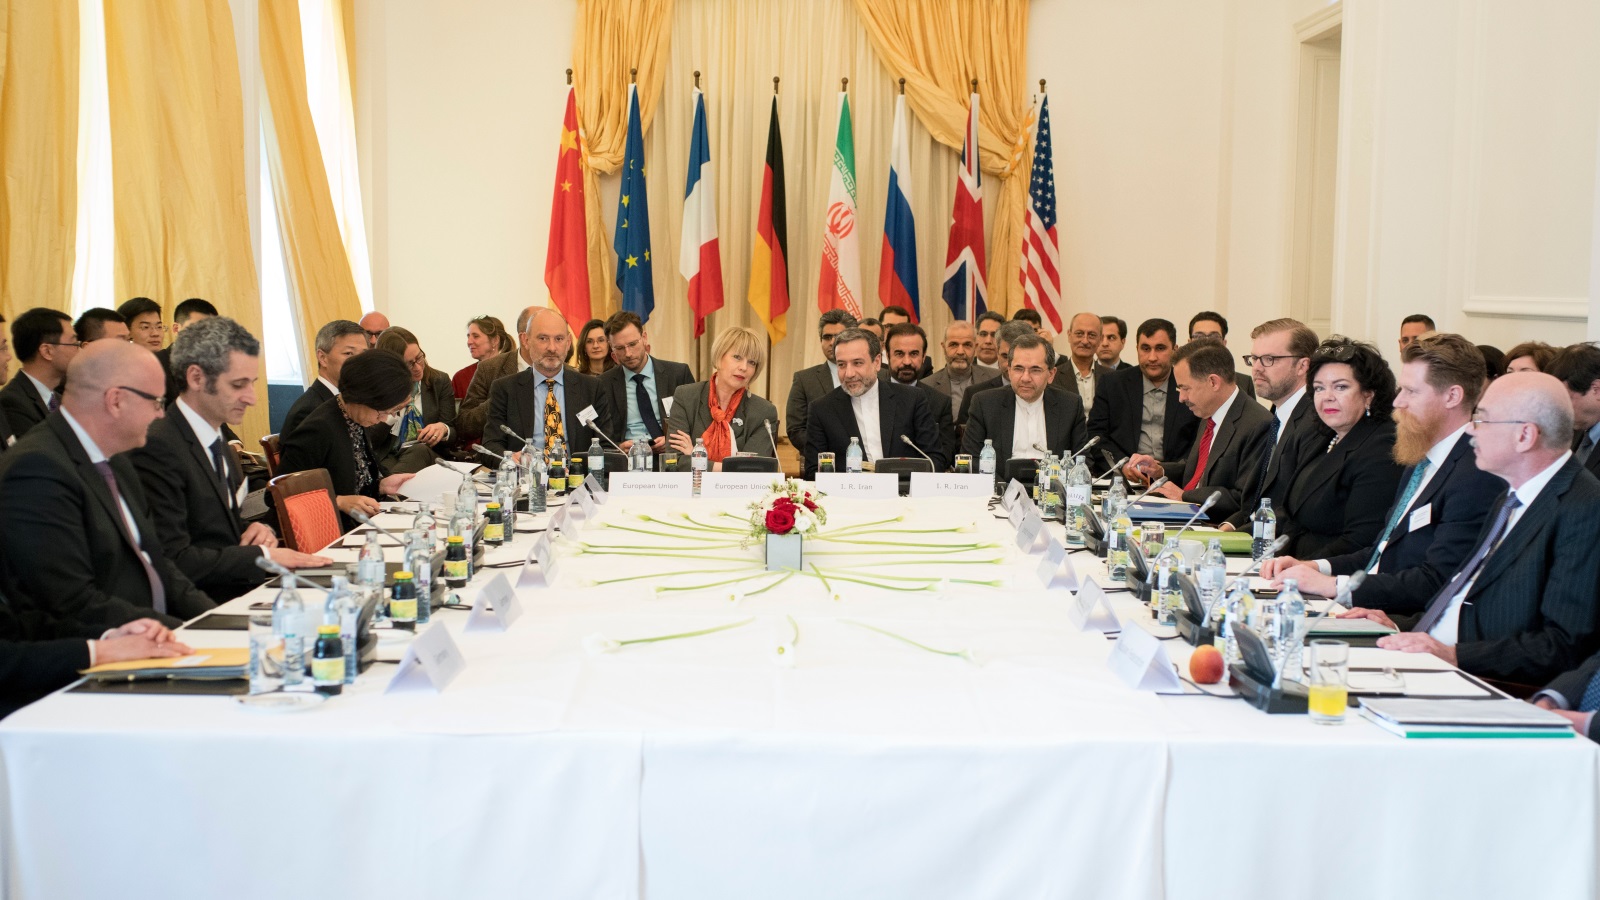 ينبغي على الولايات المتحدة والجهات الفاعلة الدوليّة الأخرى أن تستفيد من الوقت الذي وفّره الاتفاق النوويّ للبدء في التخطيط لإمكانية أن تتخلى إيران عن فرصة طمأنة المجتمع الدوليّ